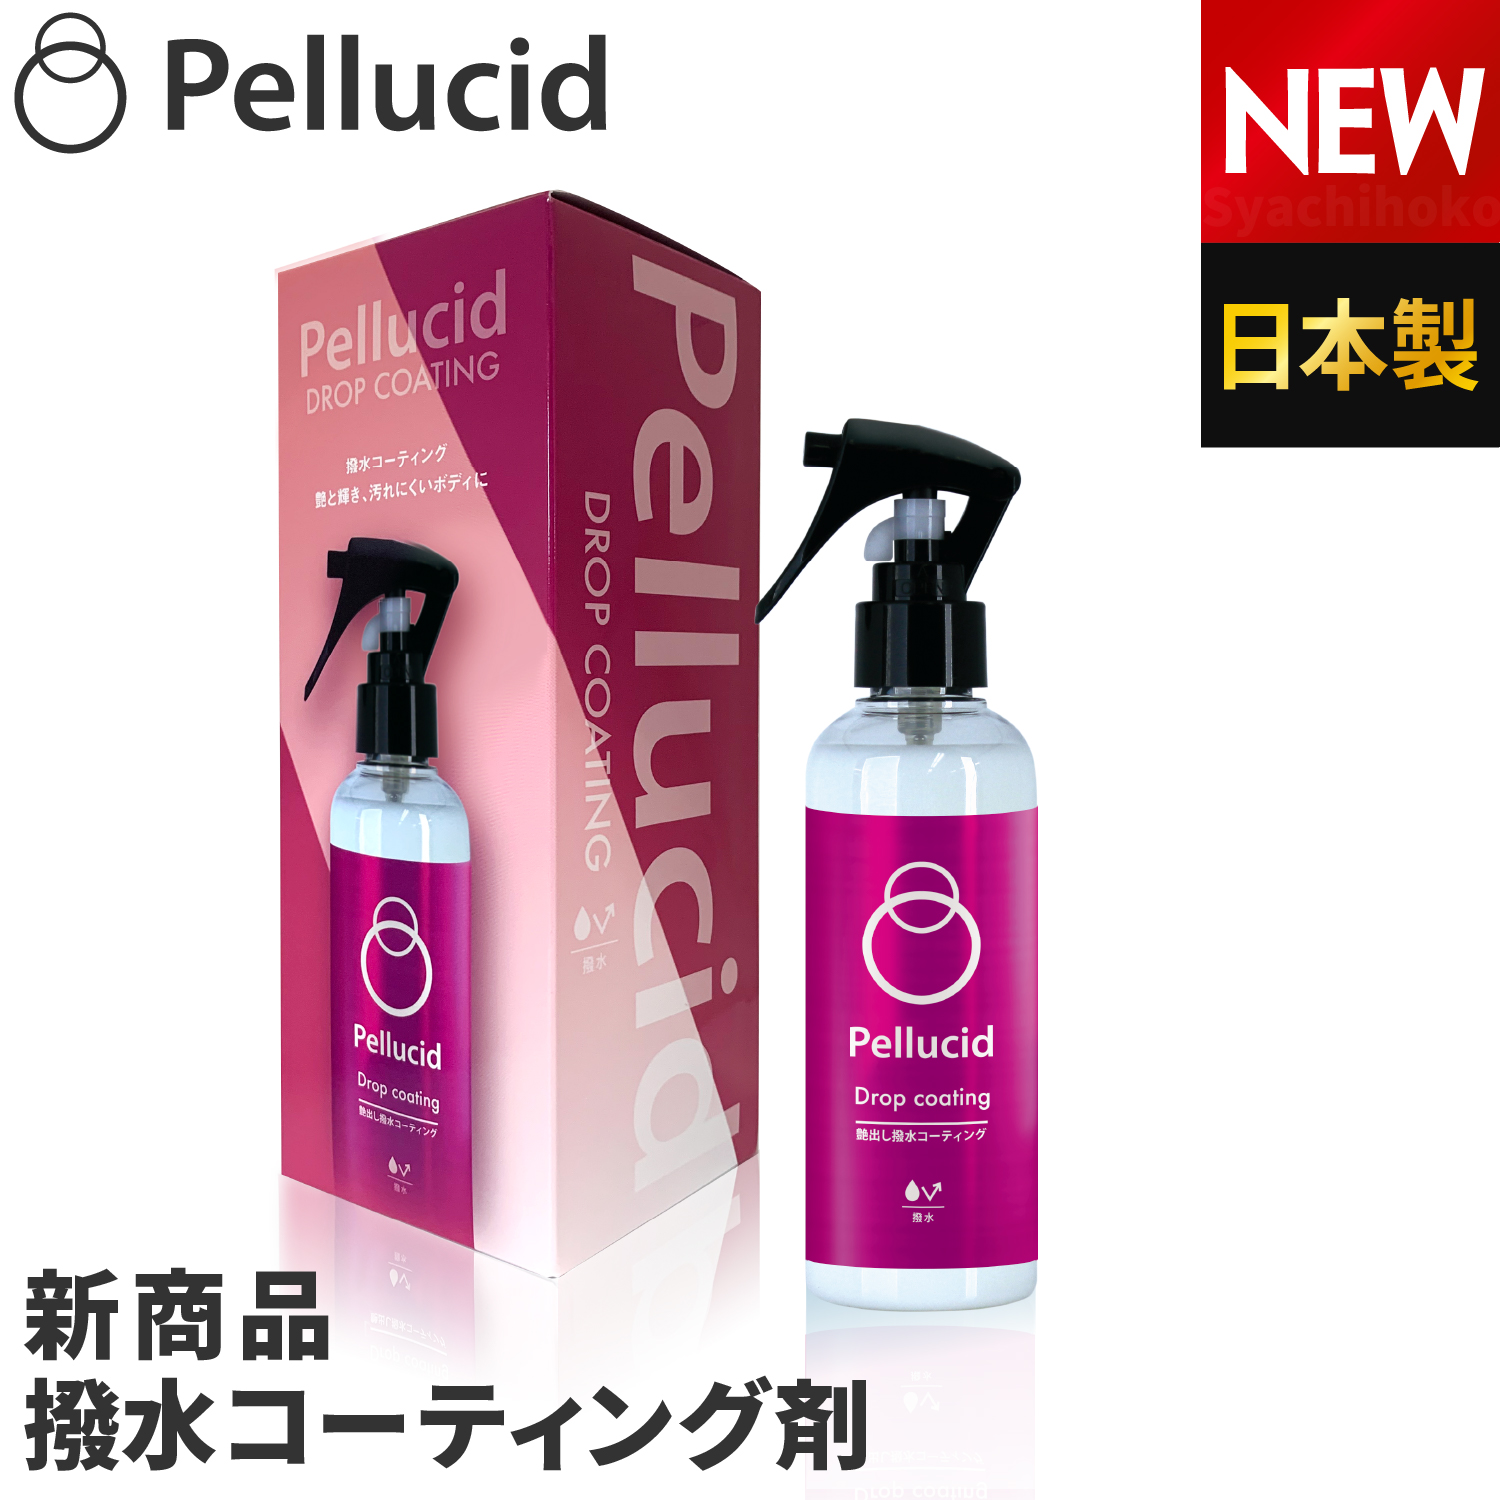 ペルシード ドロップコーティング 日本製 撥水コーティング剤 PCD-813